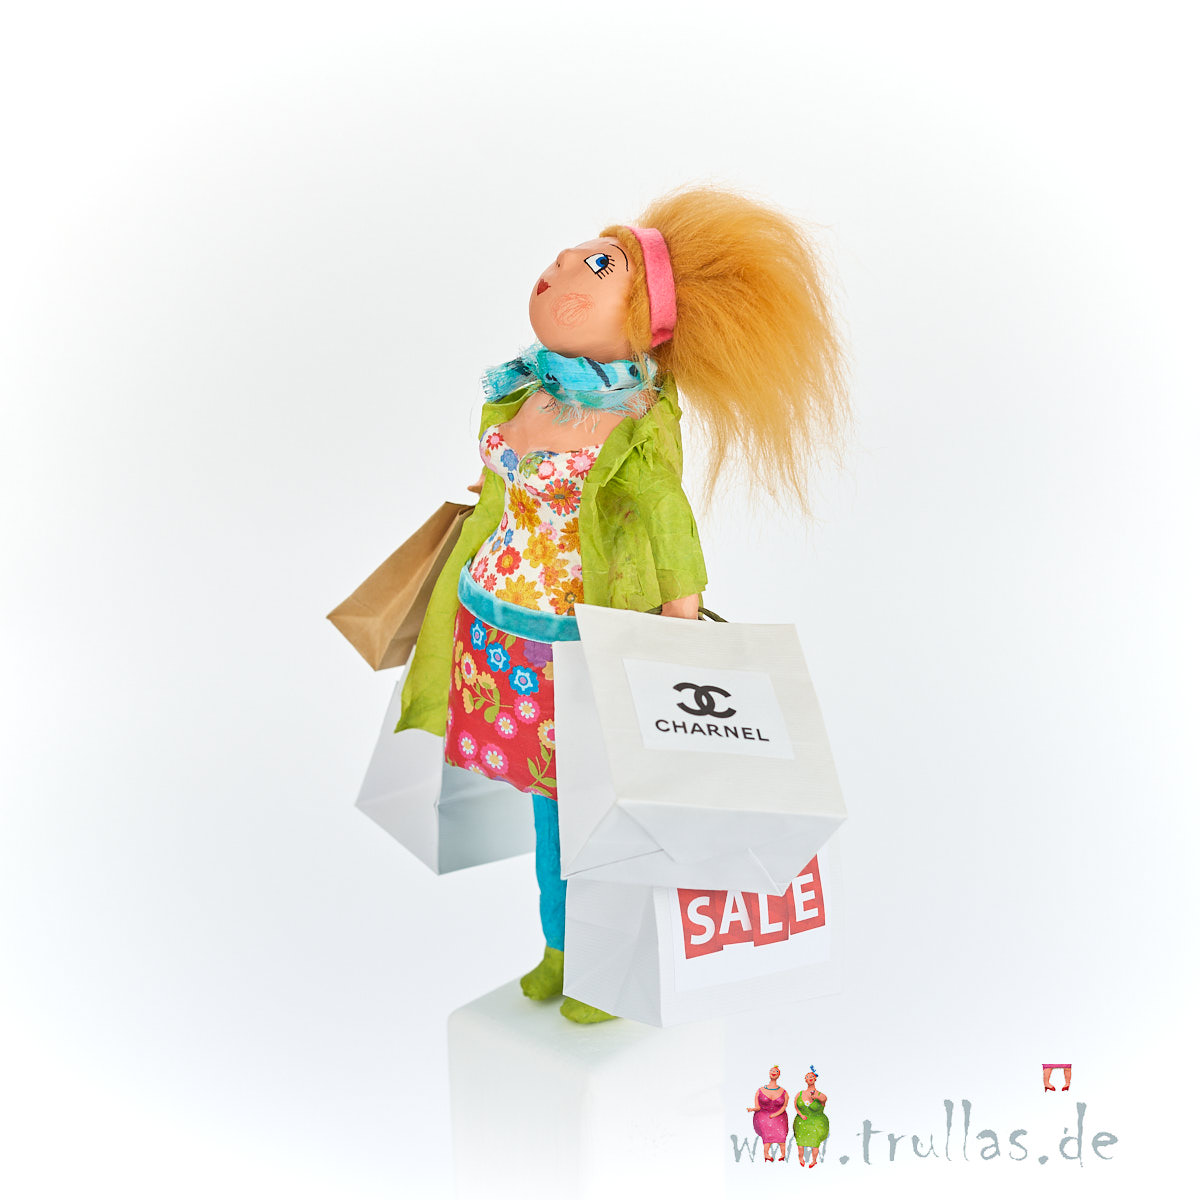 Shopping-Trulla - Merle ist eine handgefertigte Figur aus Pappmachee. Trullas sind Geschenkideen fur Menschen die handgemachte Kunst schätzen.